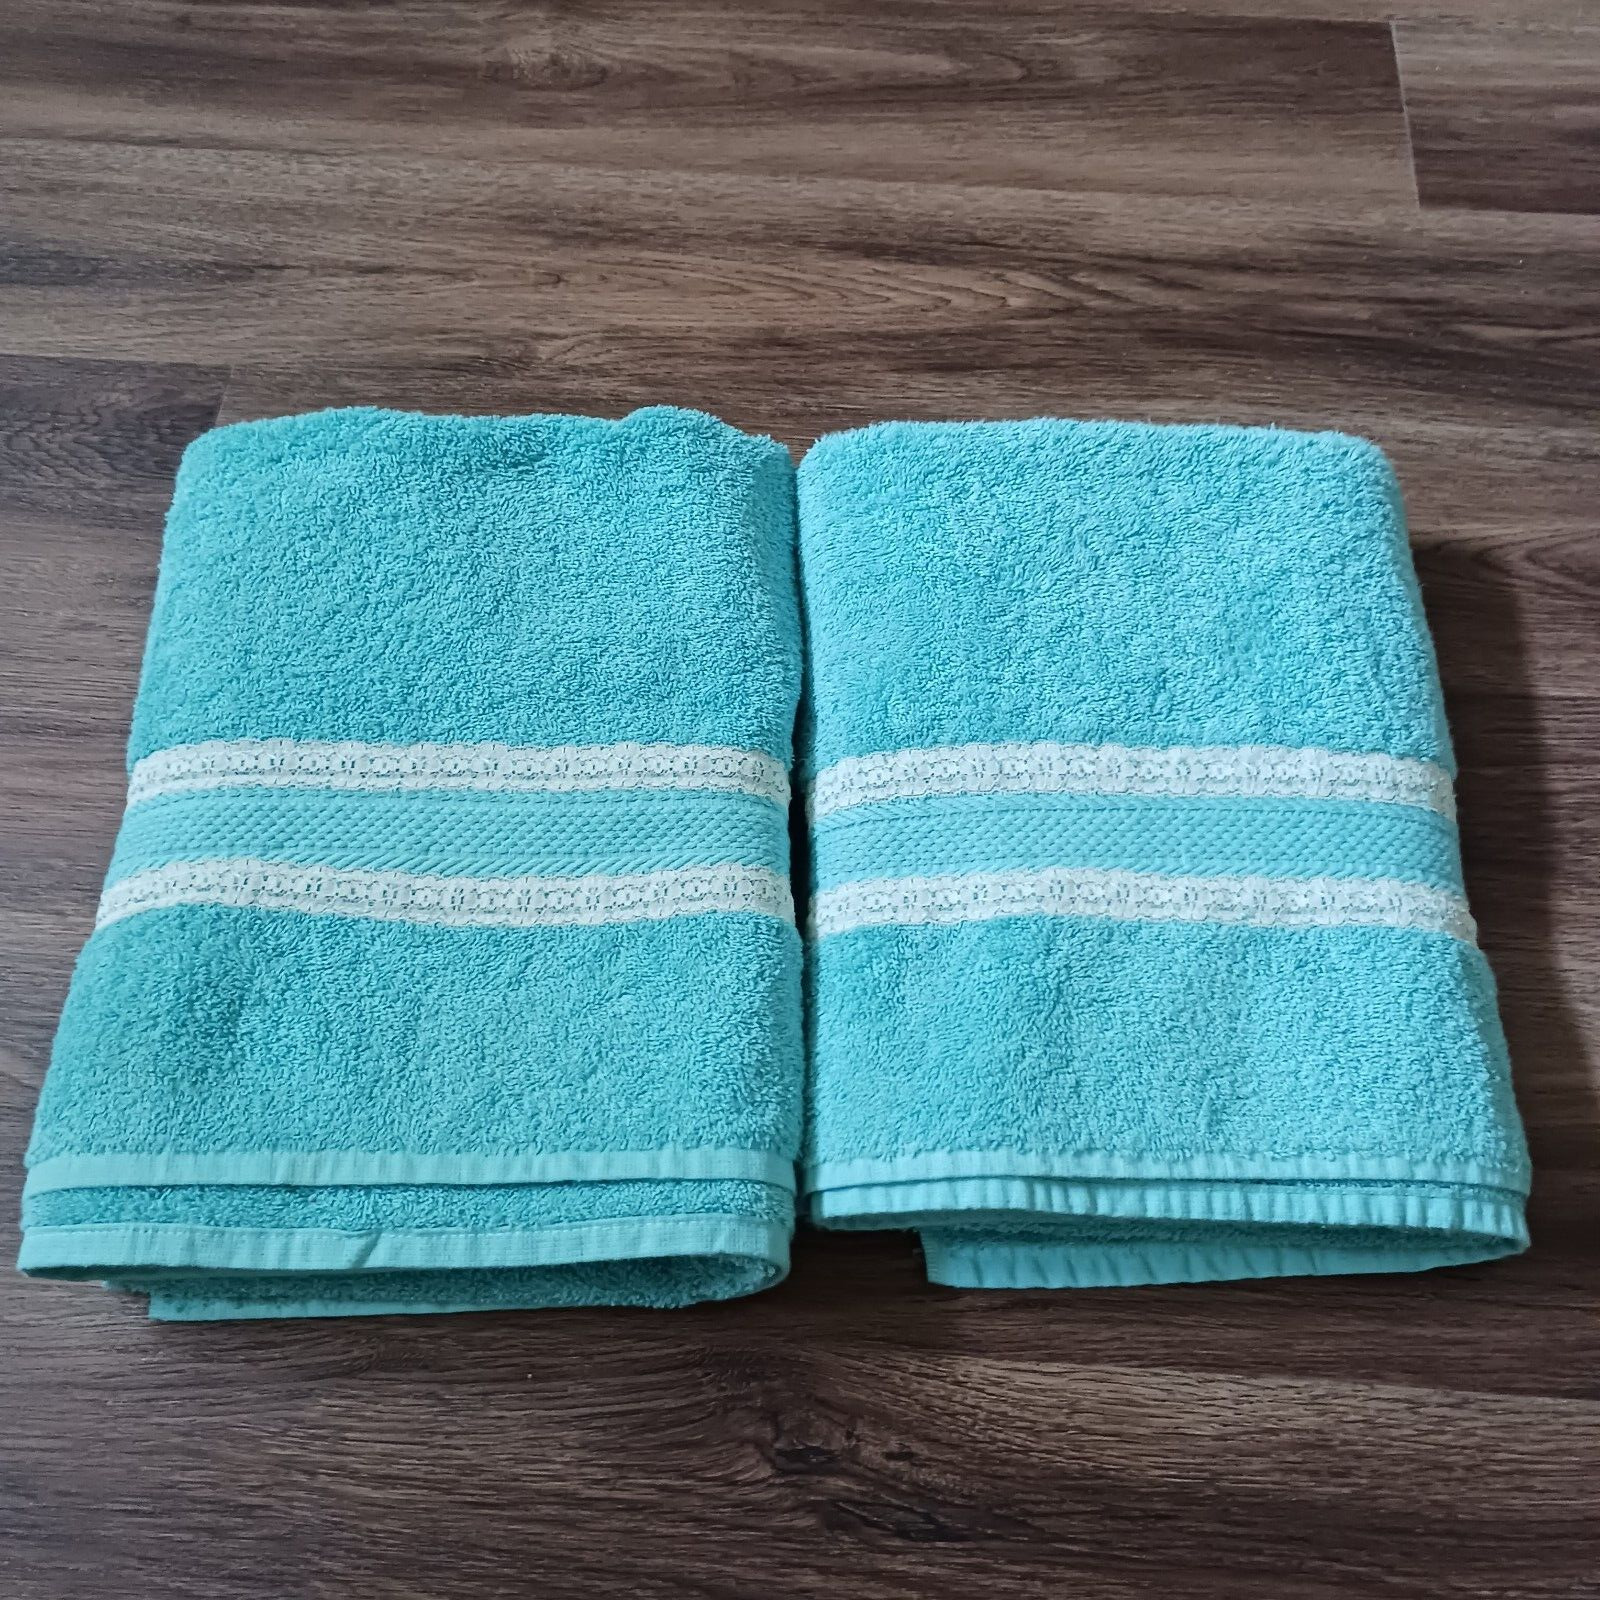 2 Vintage Stevens Aqua Lace Bath Towels USA 100% Cotton 50 x 30